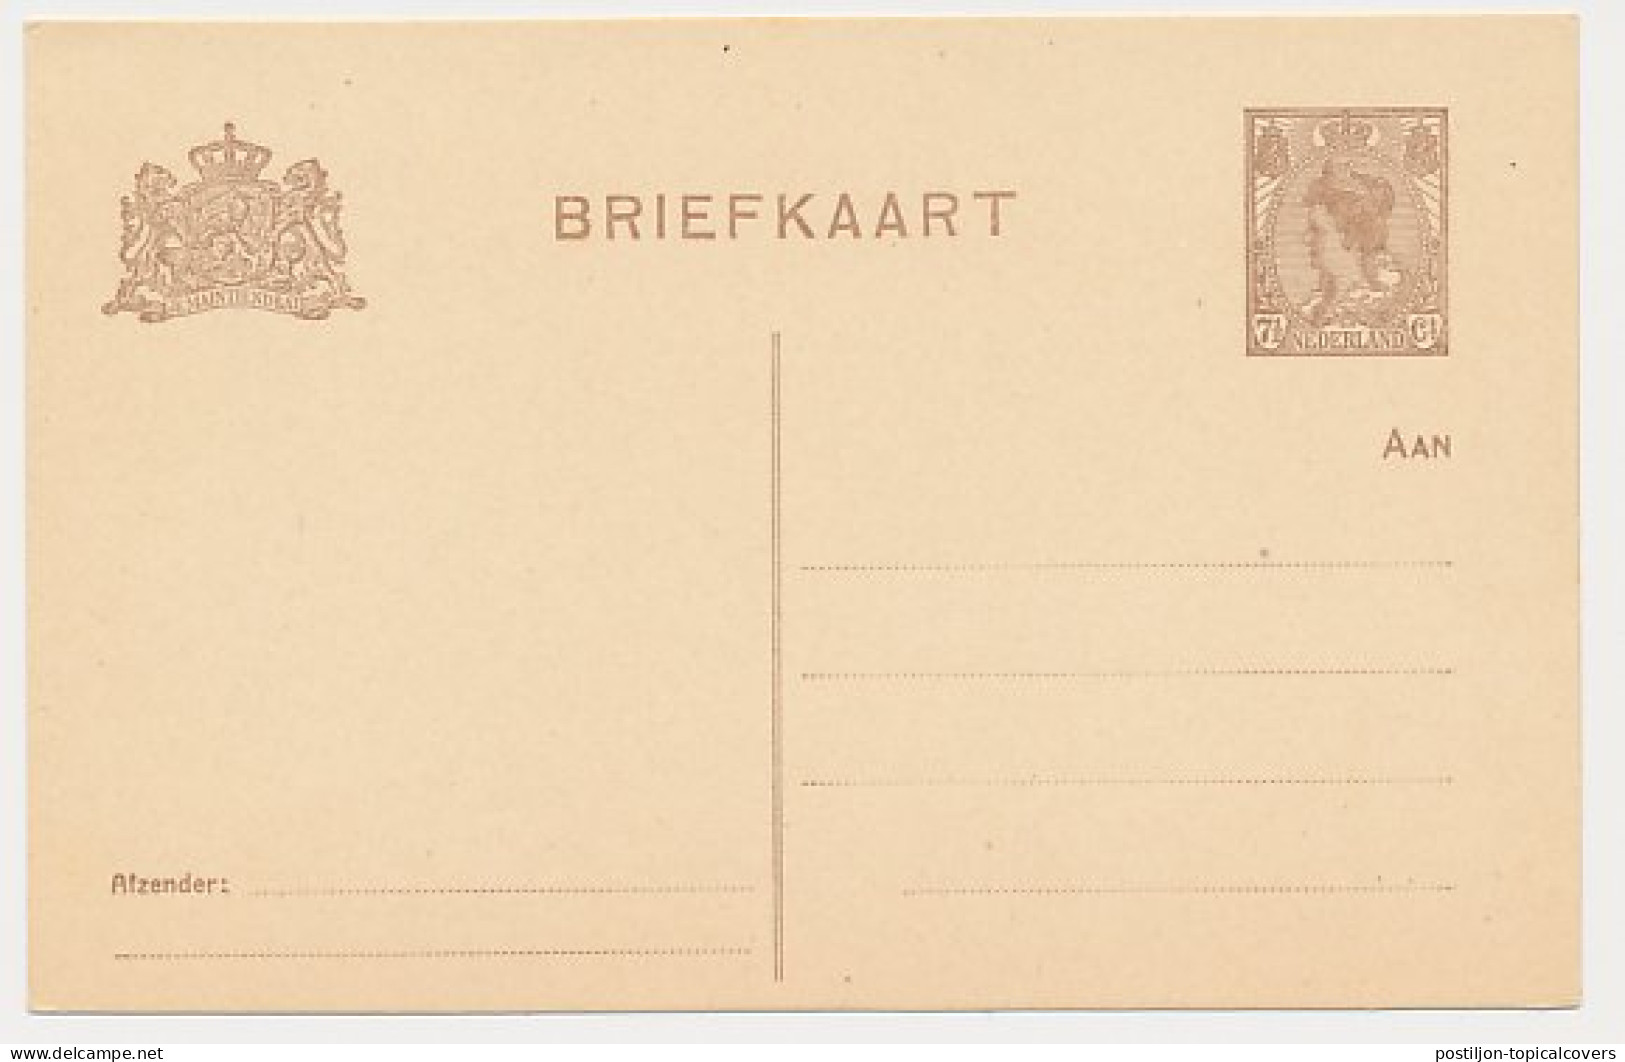 Briefkaart G. 122 I - Ganzsachen